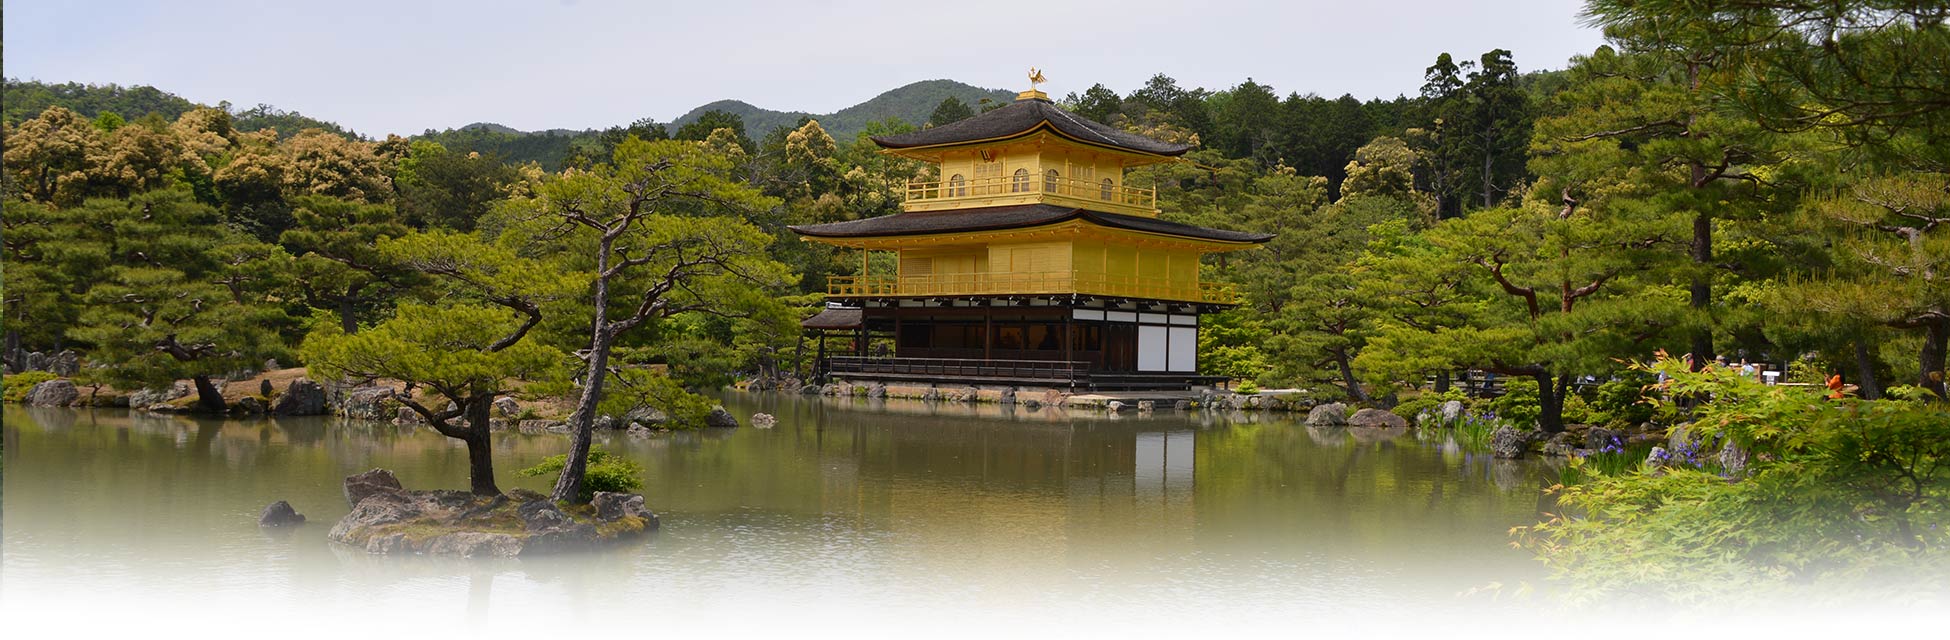 japan-kyoto-gouden-tempel.jpg